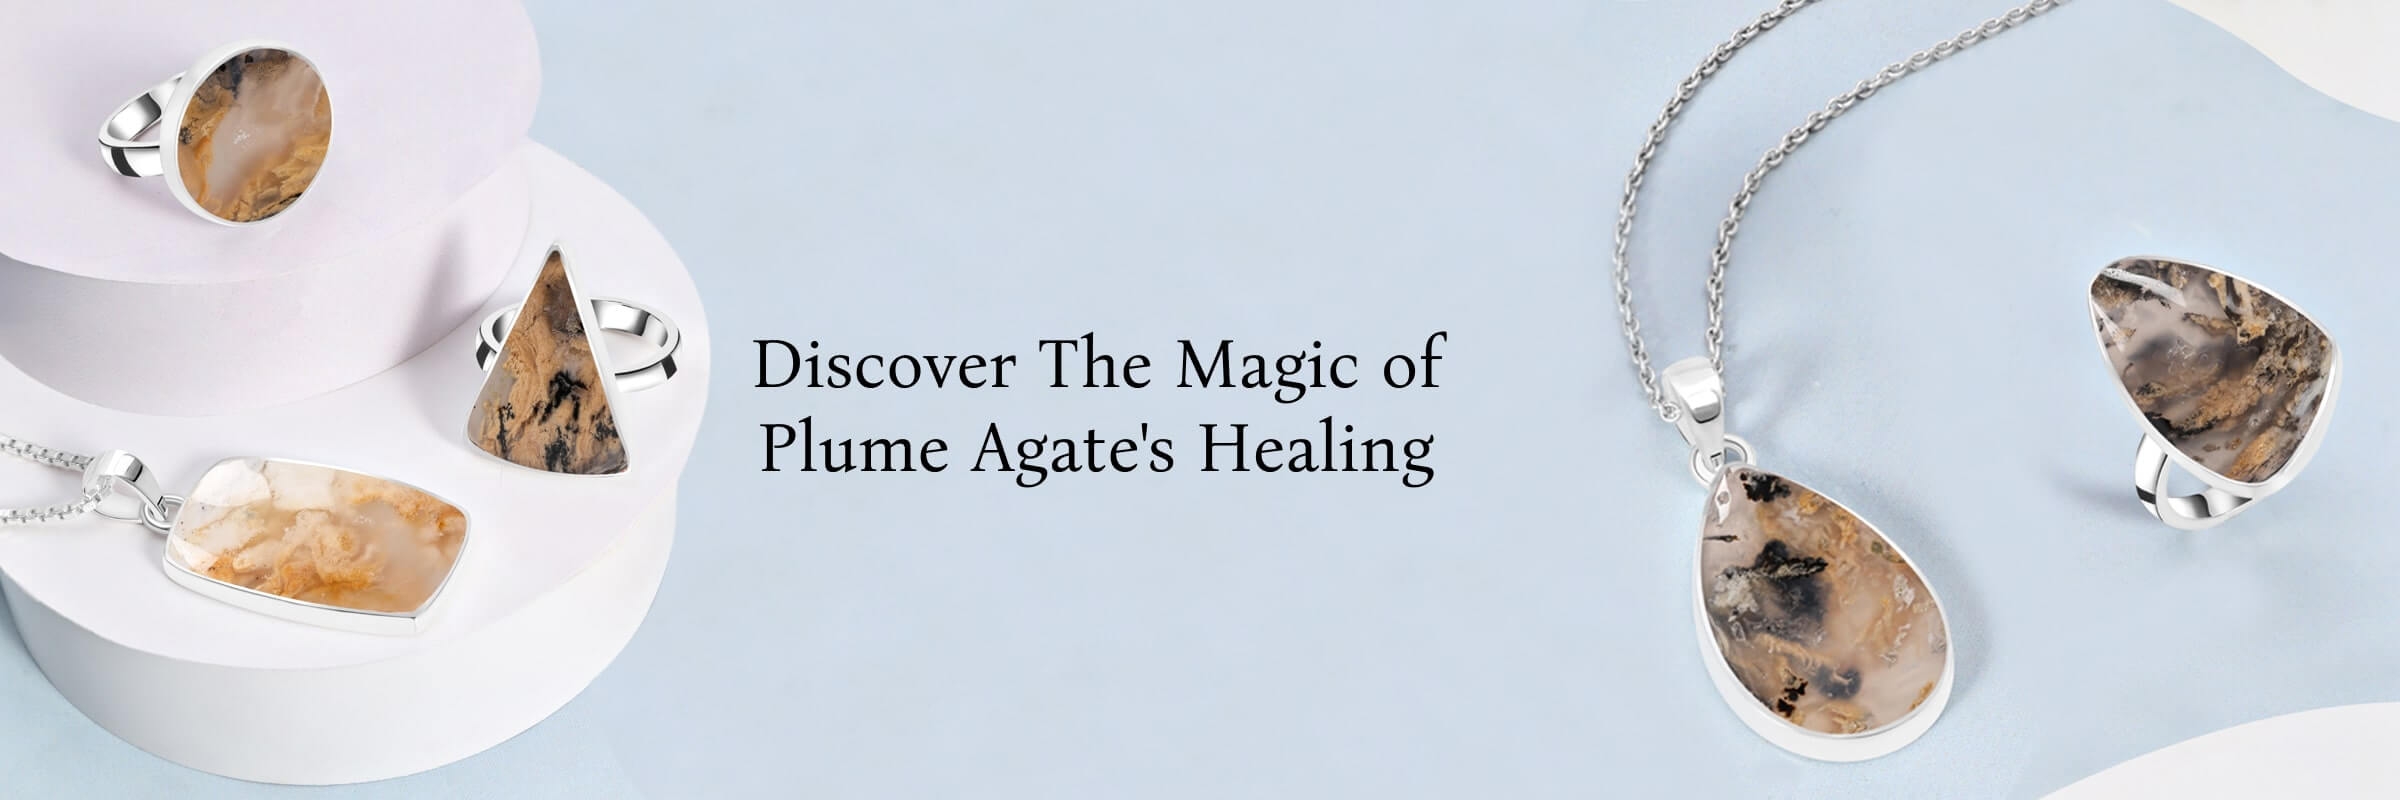 Healing properties of plume agate